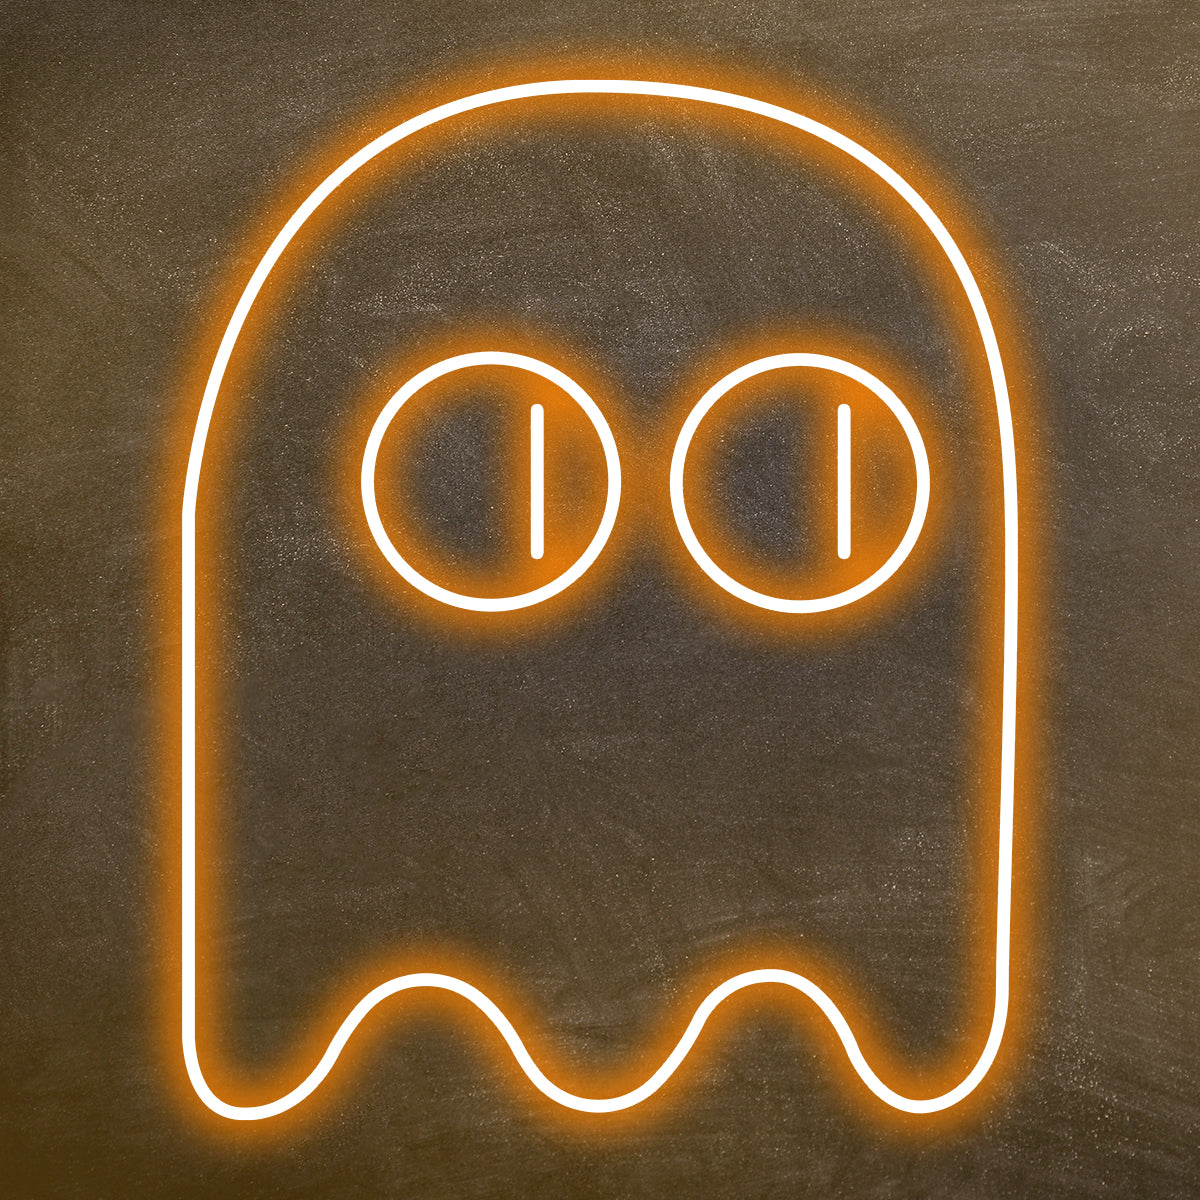 Fantasma - Simbolo neon led